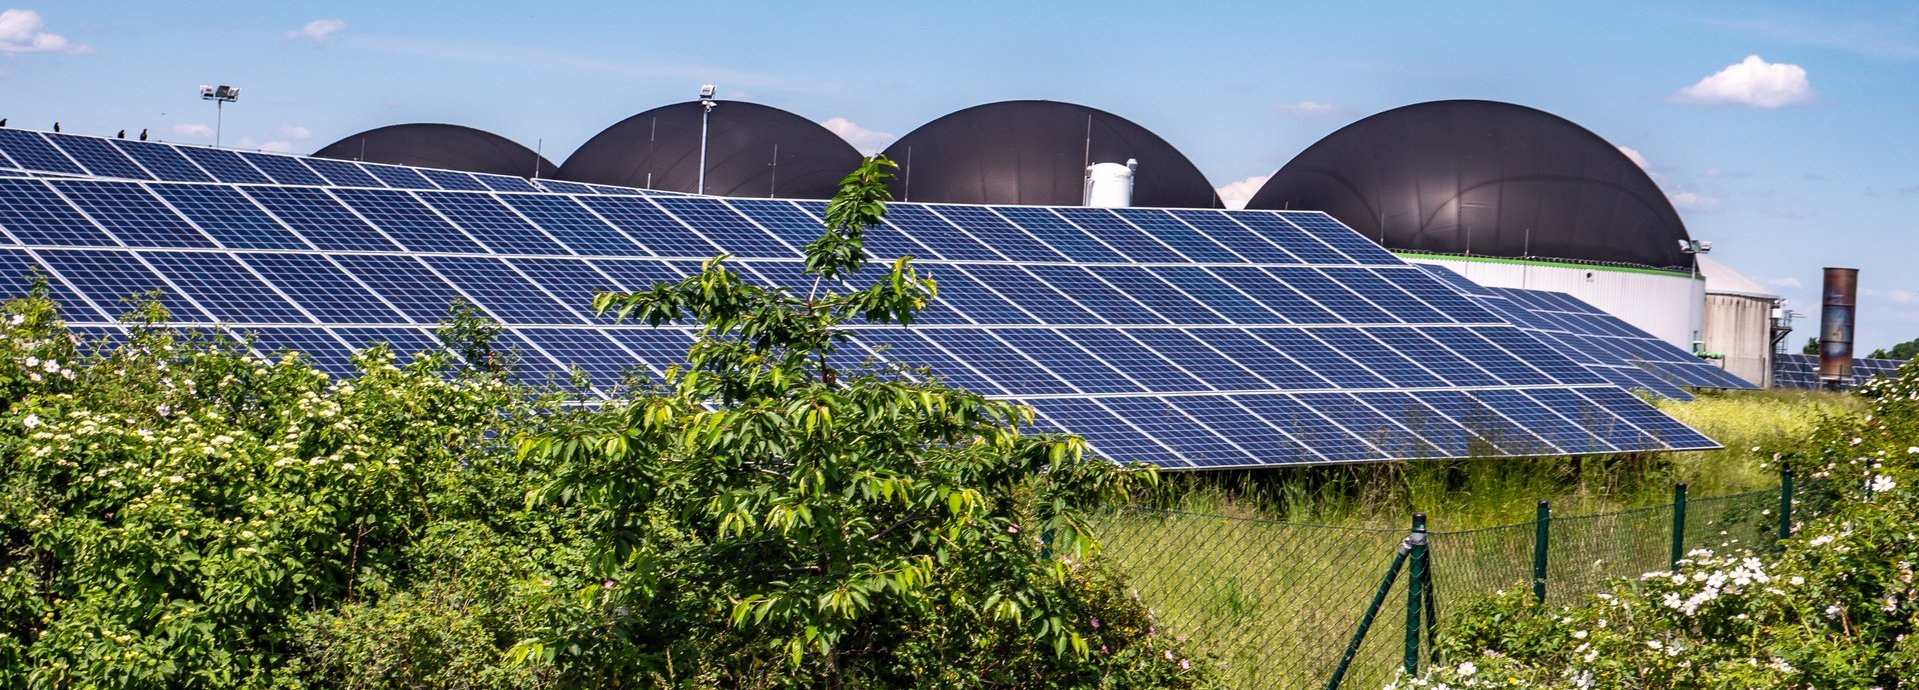 Solarkollektoren hinter Pflanzen mit Biogasanlagen im Hintergrund